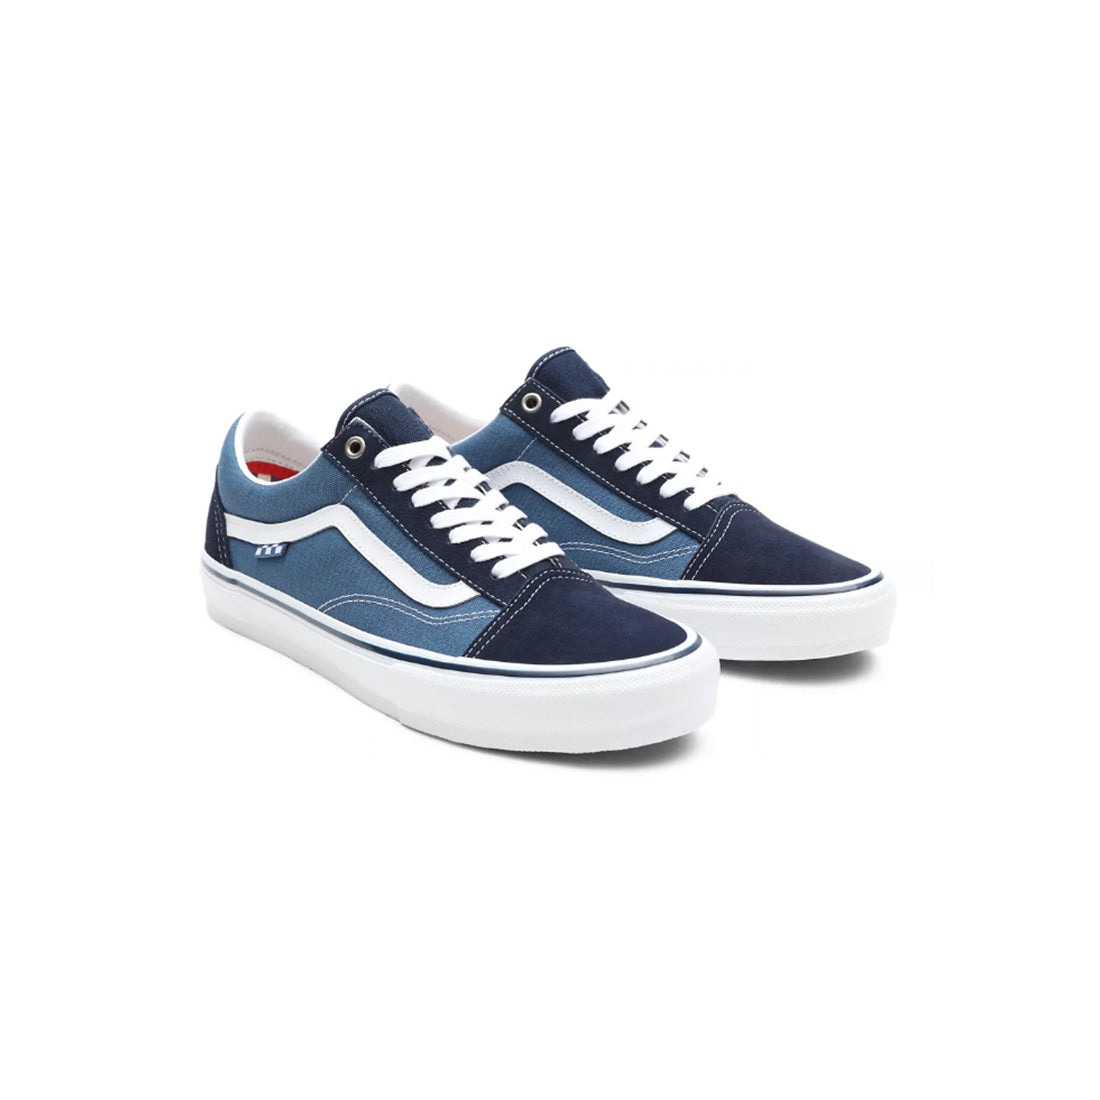 Vans Low Shoes - Skate Old Skool - Blue